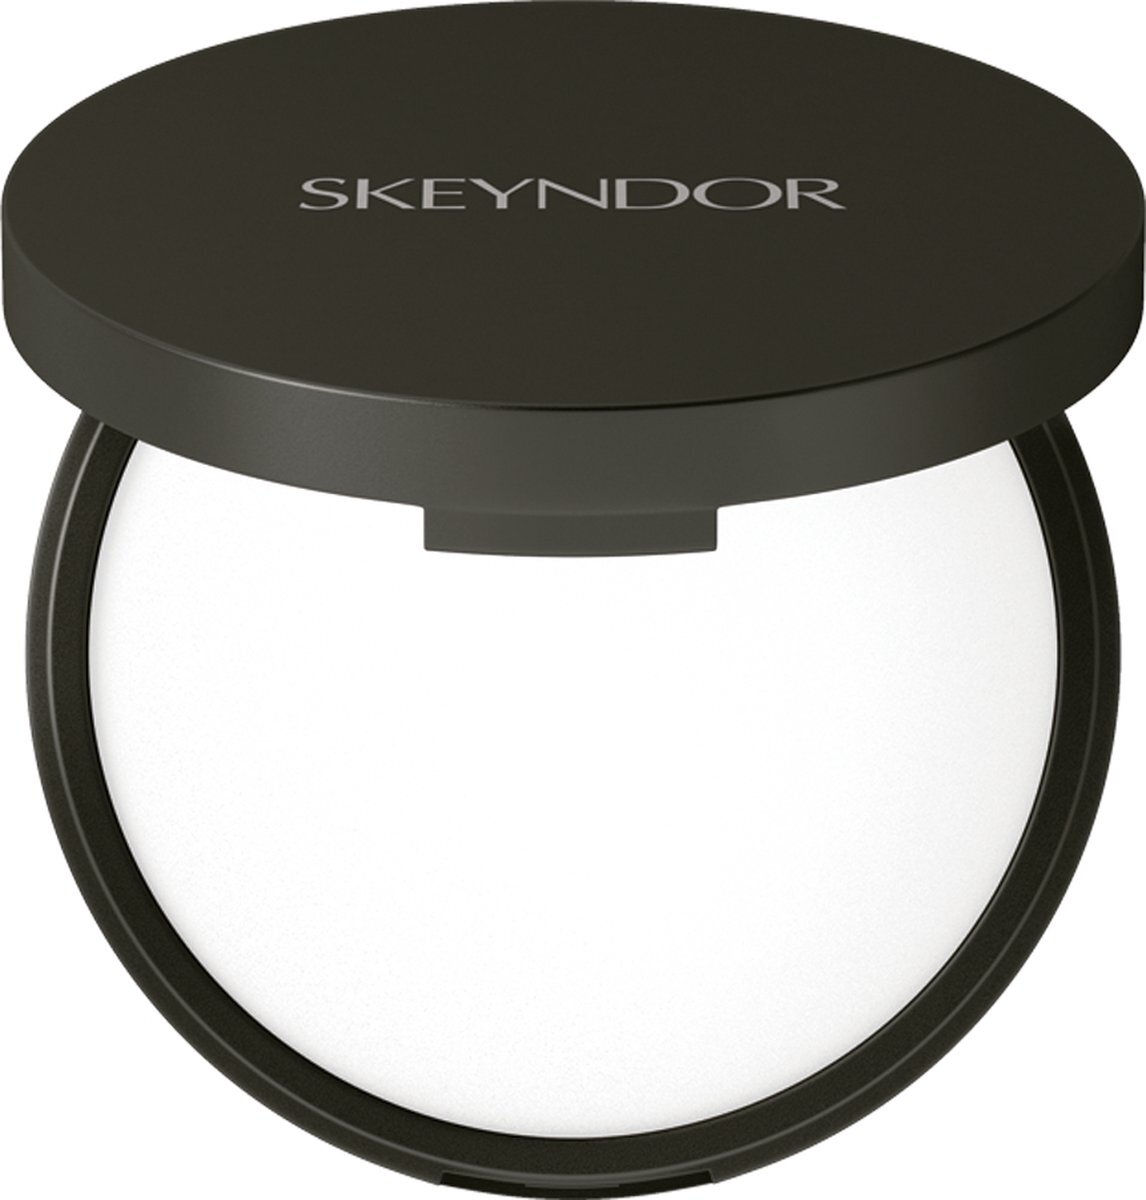 Skeyndor High Definition Compact Powder